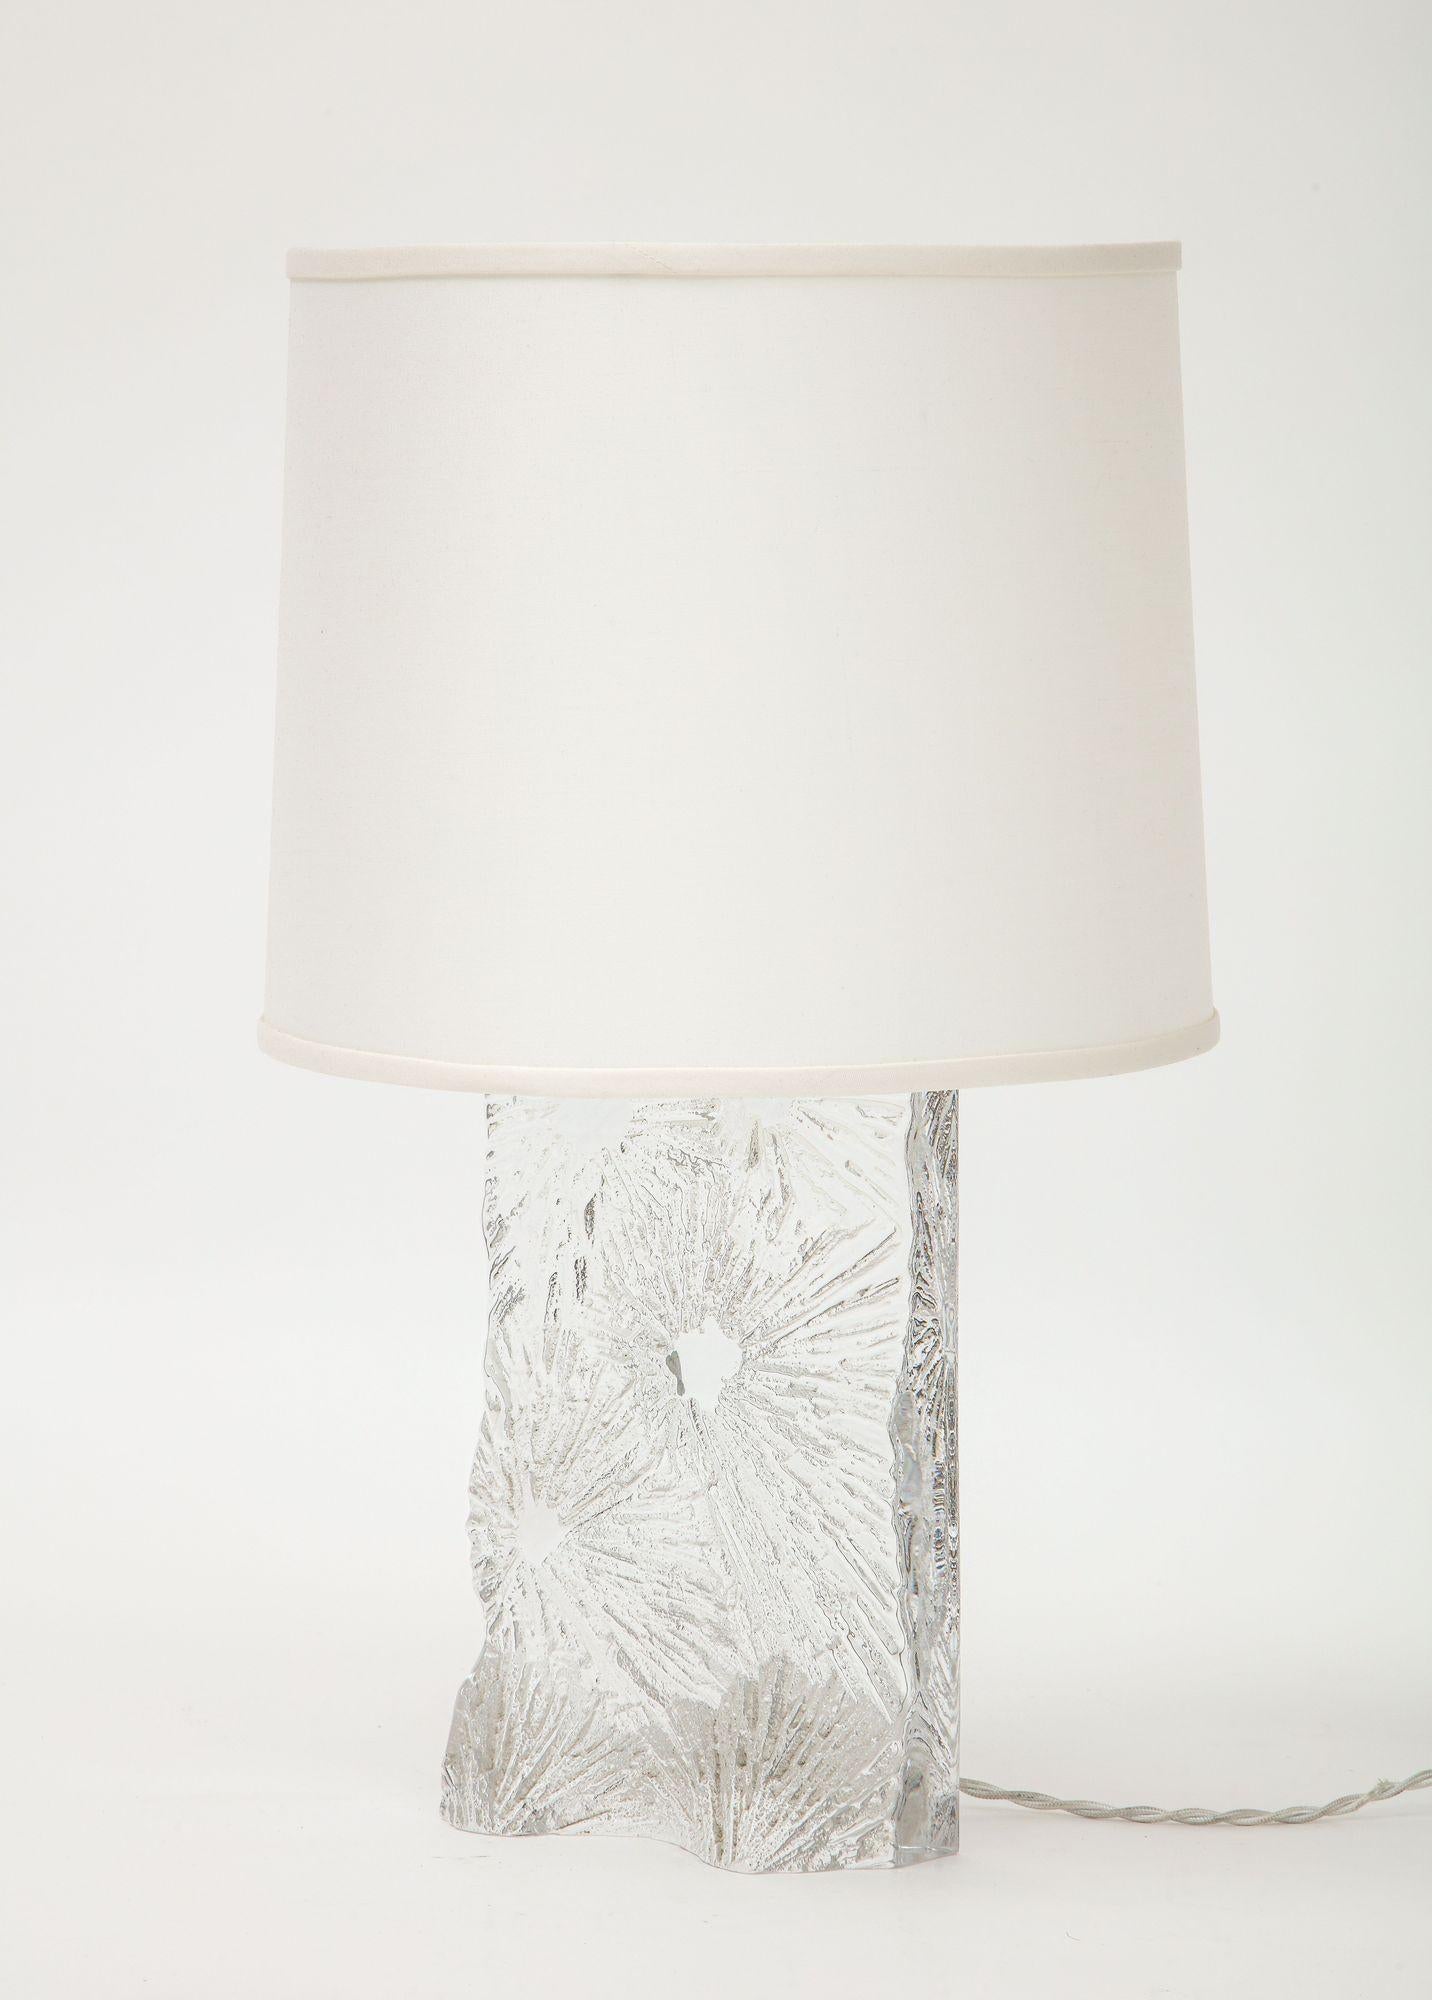 Une superbe lampe de table en cristal de Daum avec un motif Chardon gravé à l'acide, signée sur le fond.